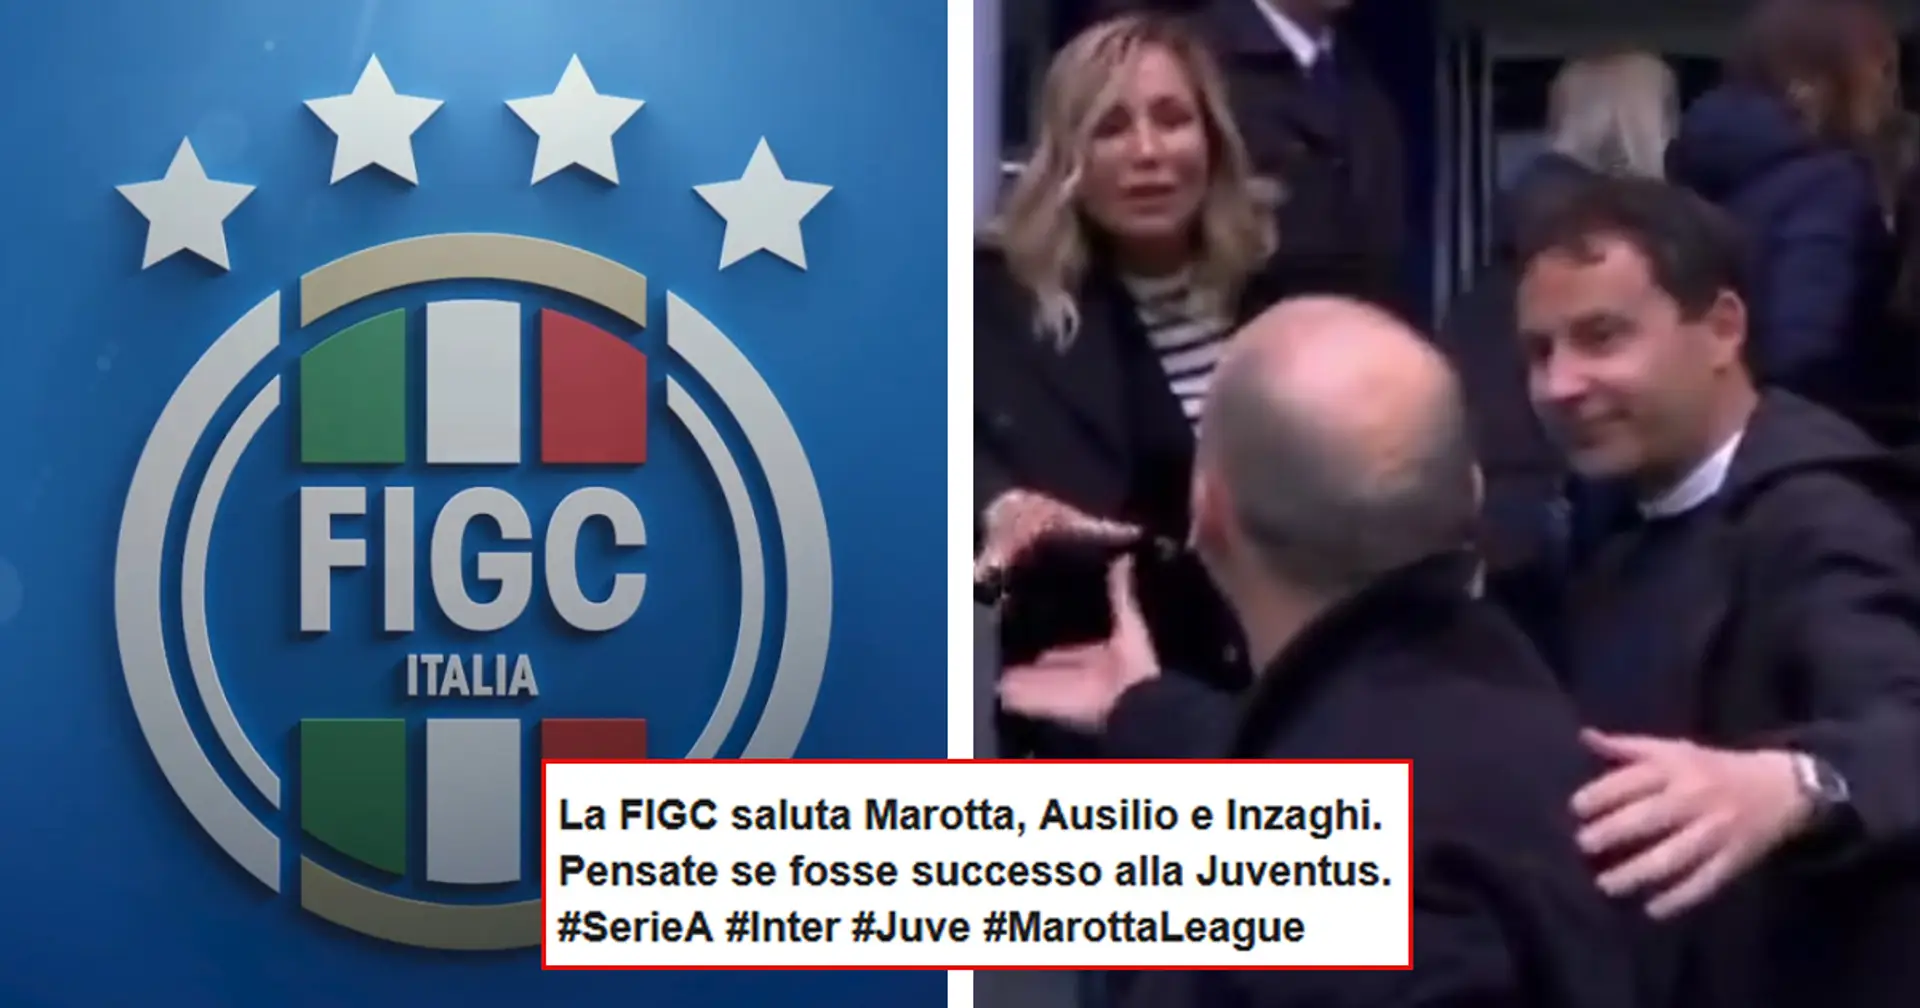 Il responsabile giustizia della FIGC ride e scherza con i dirigenti dell'Inter, gli Juventini: "Pensate se fosse stata un'altra squadra"